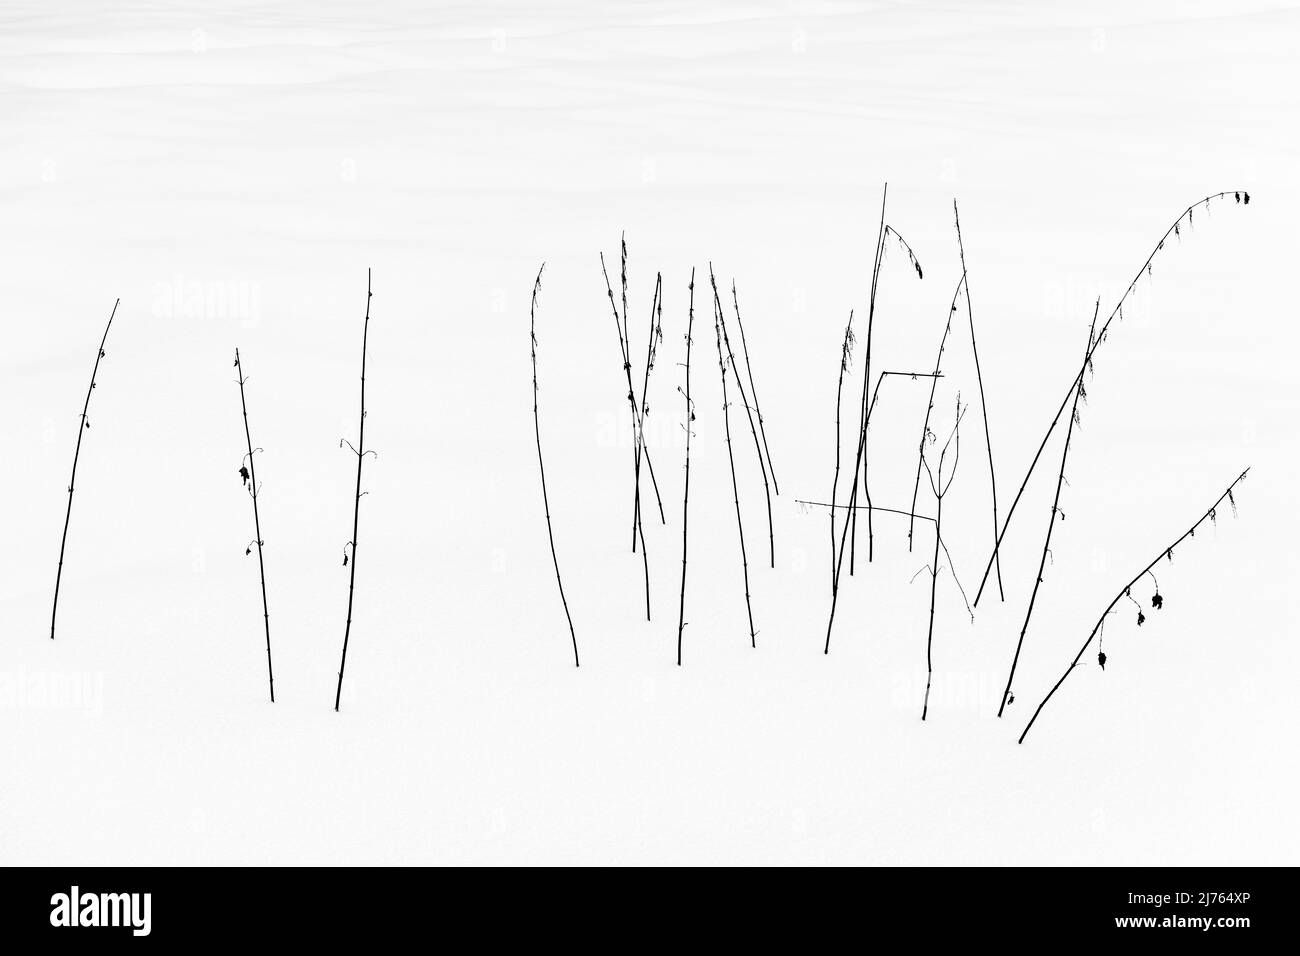 Eine Gruppe von Brennnesseln stielte im Weiß des Schnees in Schwarz und Weiß. Stockfoto